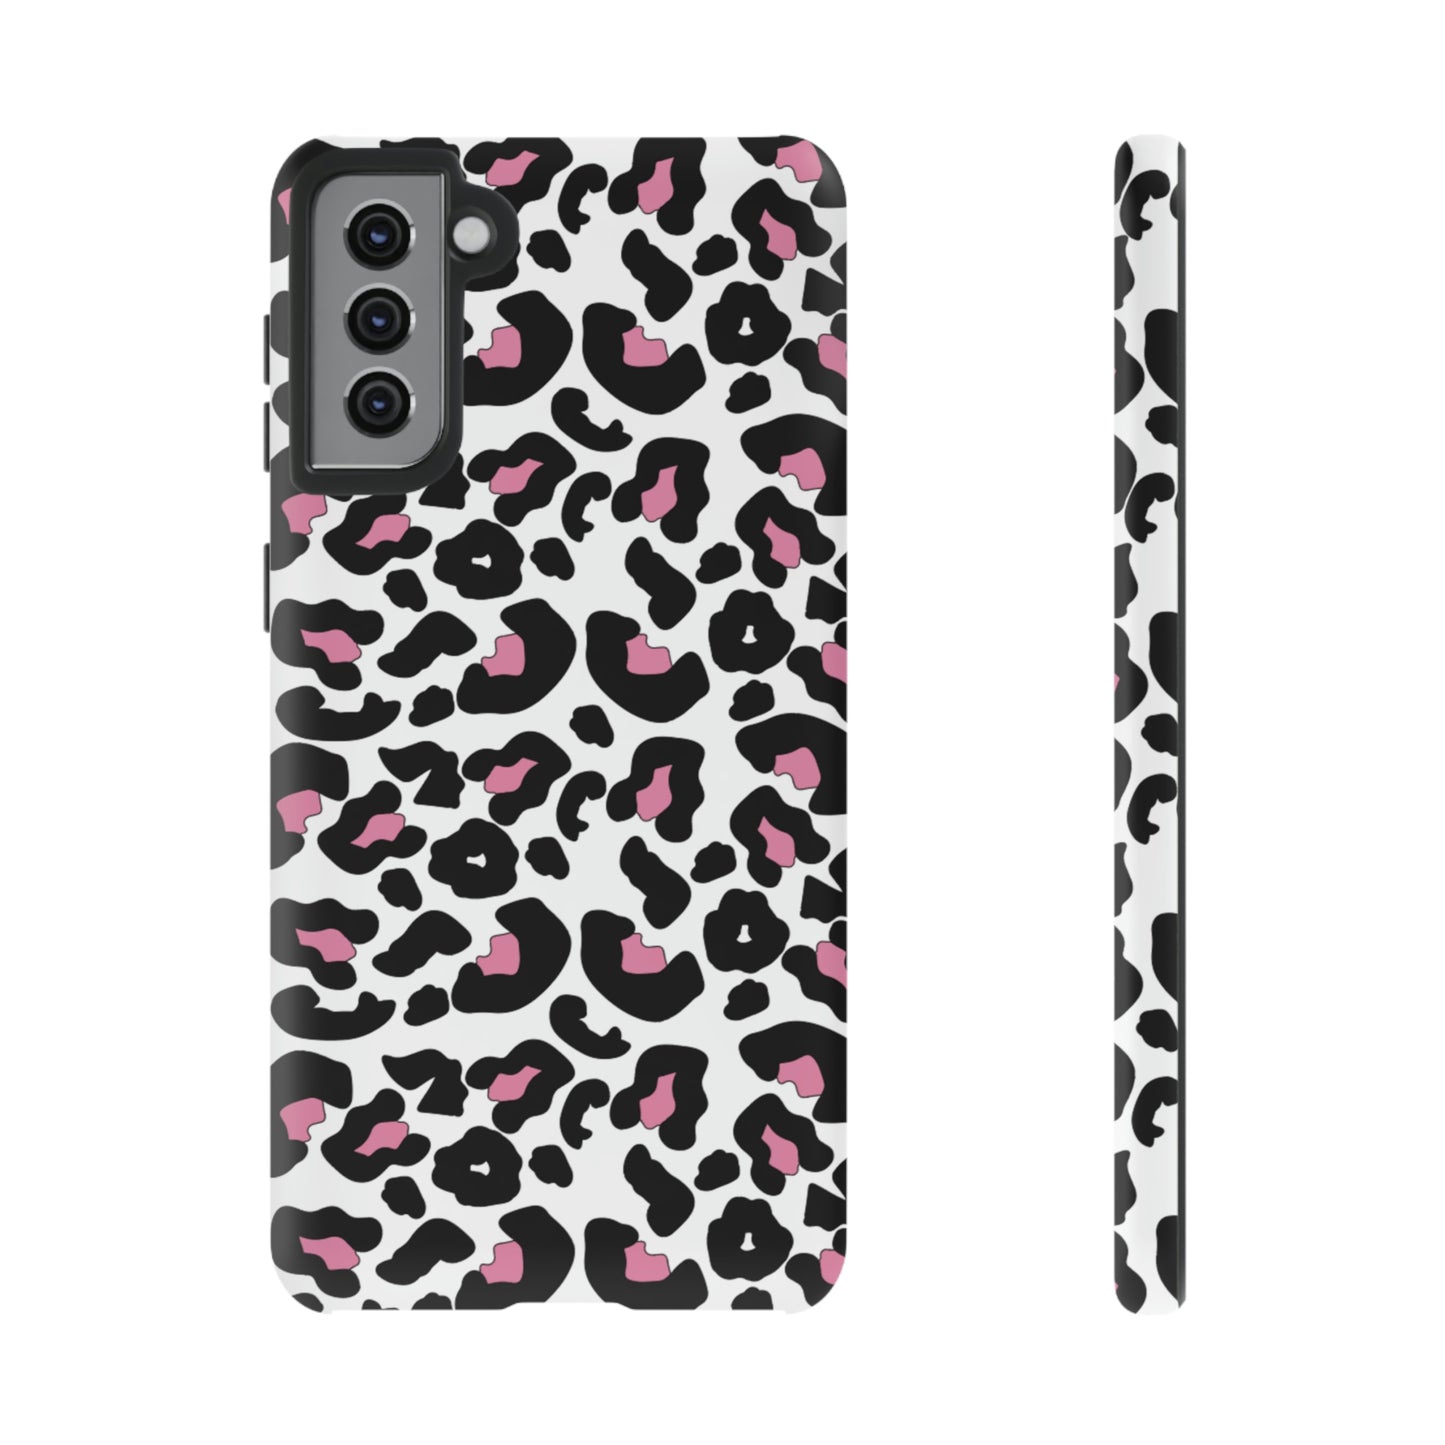 Cheetah-Tough Phone Cases